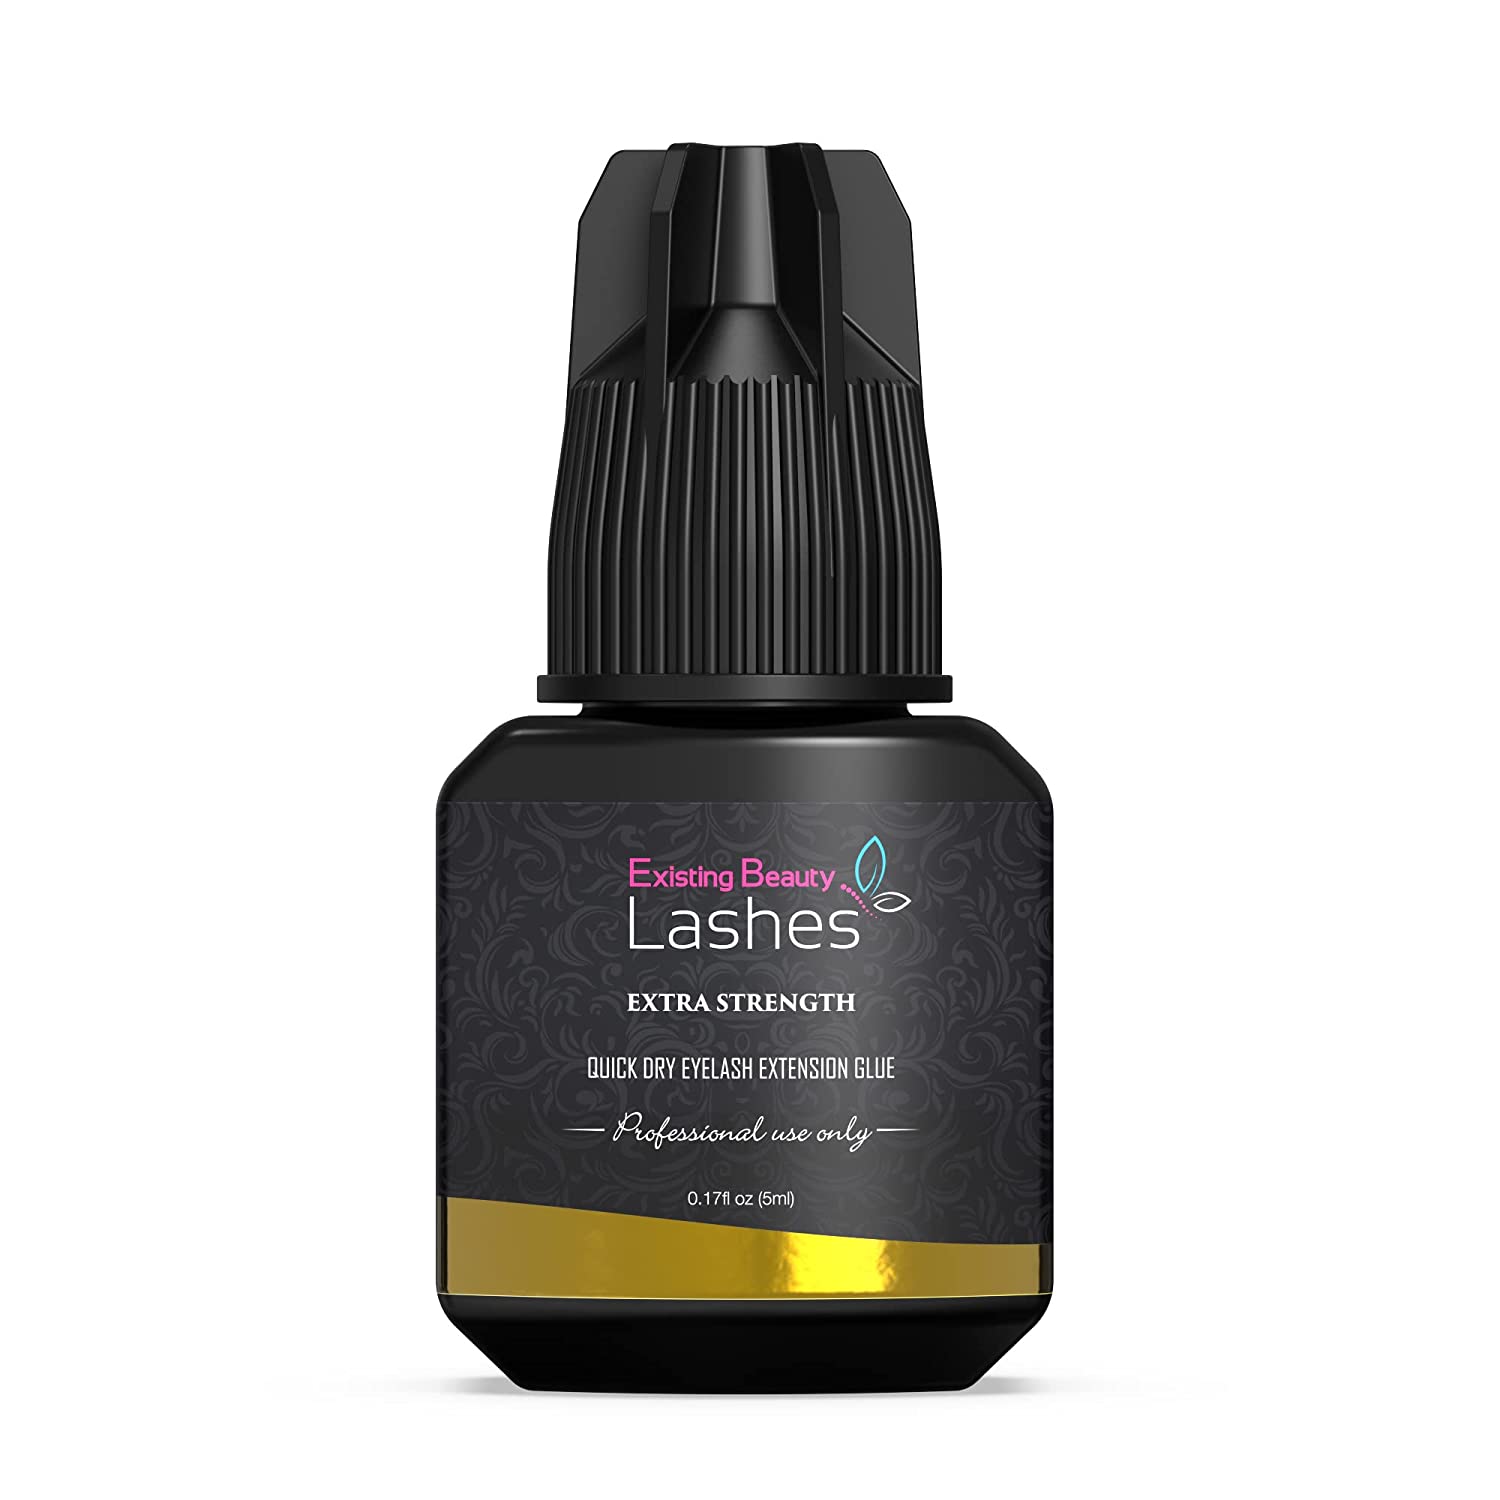 eyelash extension glue | eyelash product | eyelash adhesive | makeup product